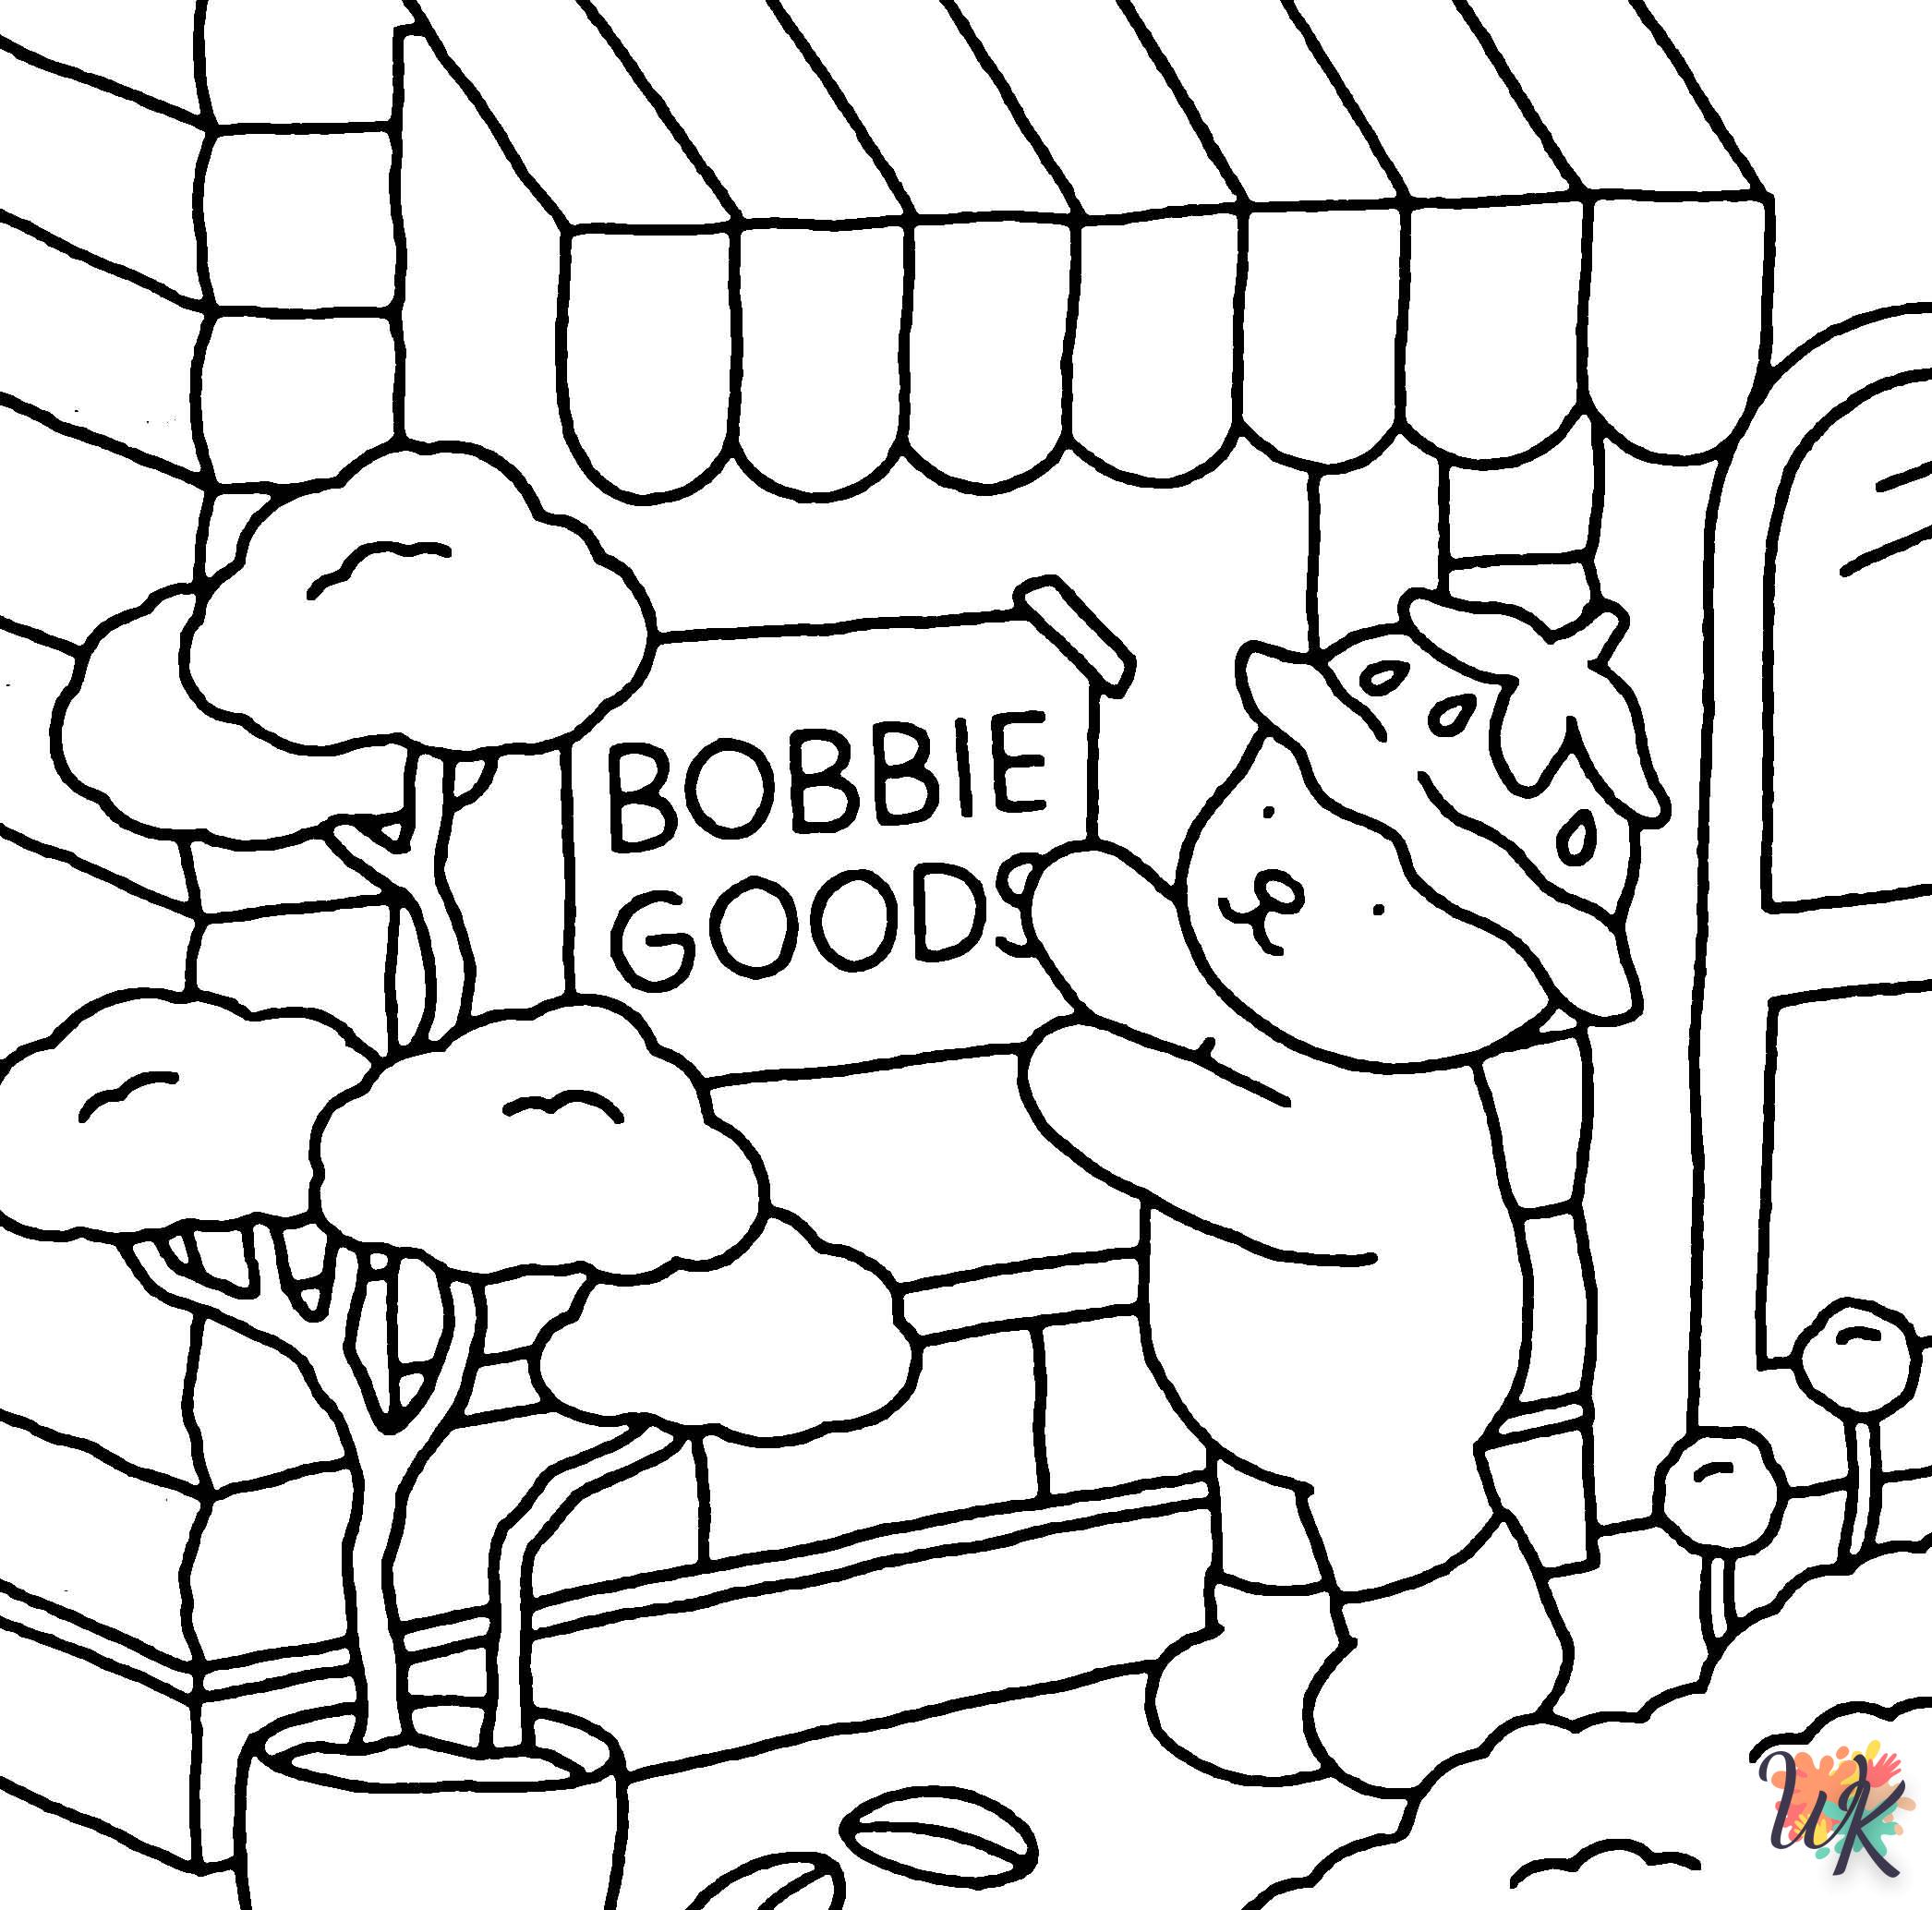 coloriage Bobbie Goods  en ligne gratuit pour 12 ans